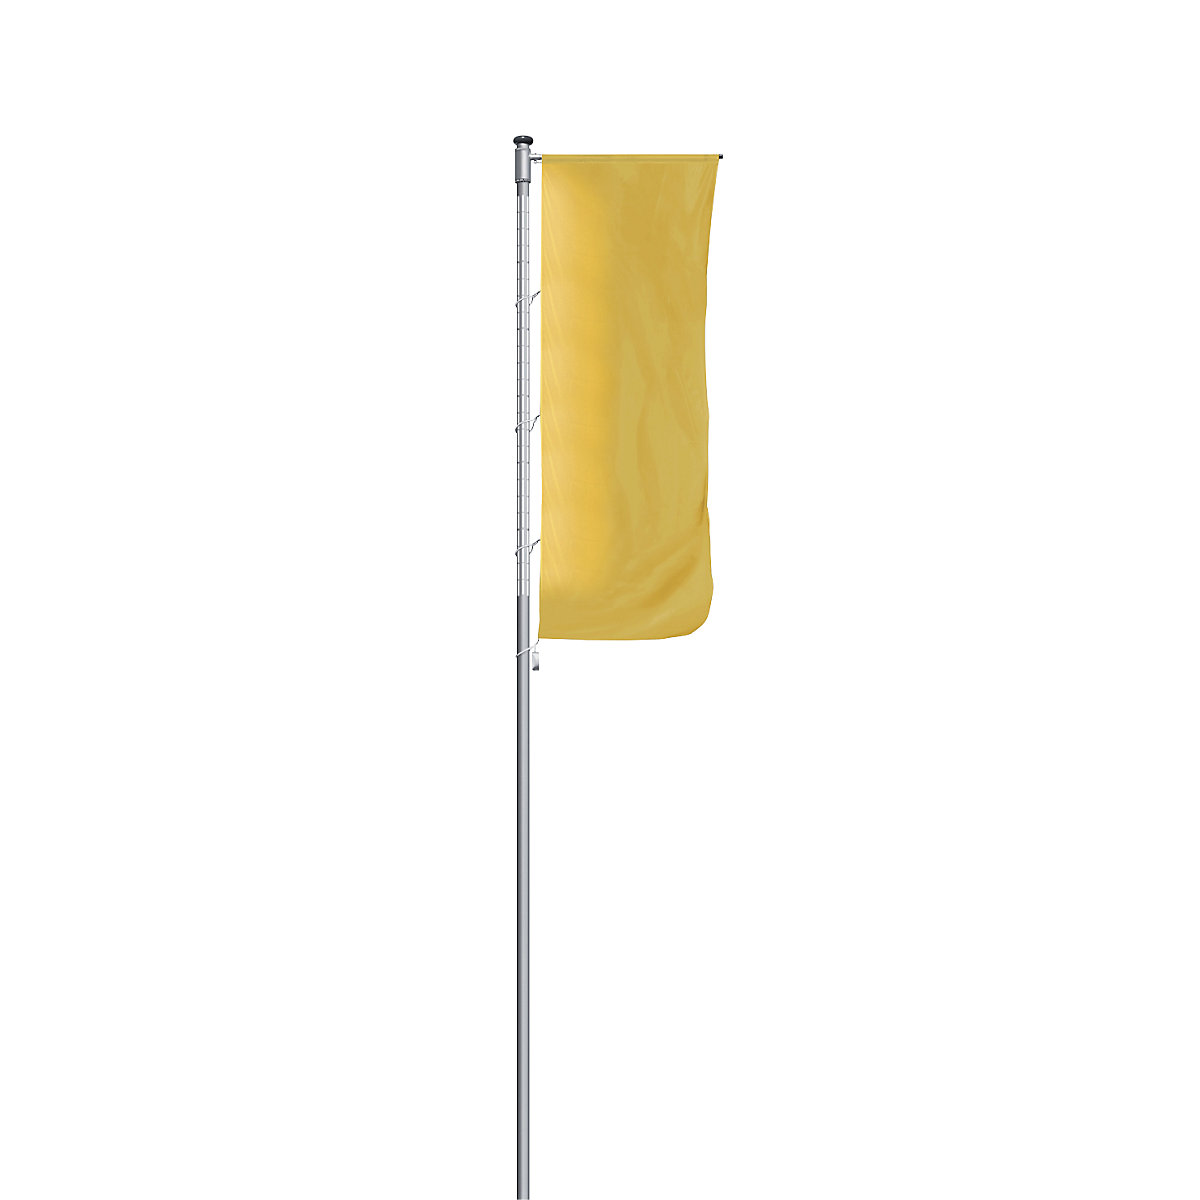 Aluminijski stup za zastave, osvijetljen - Mannus